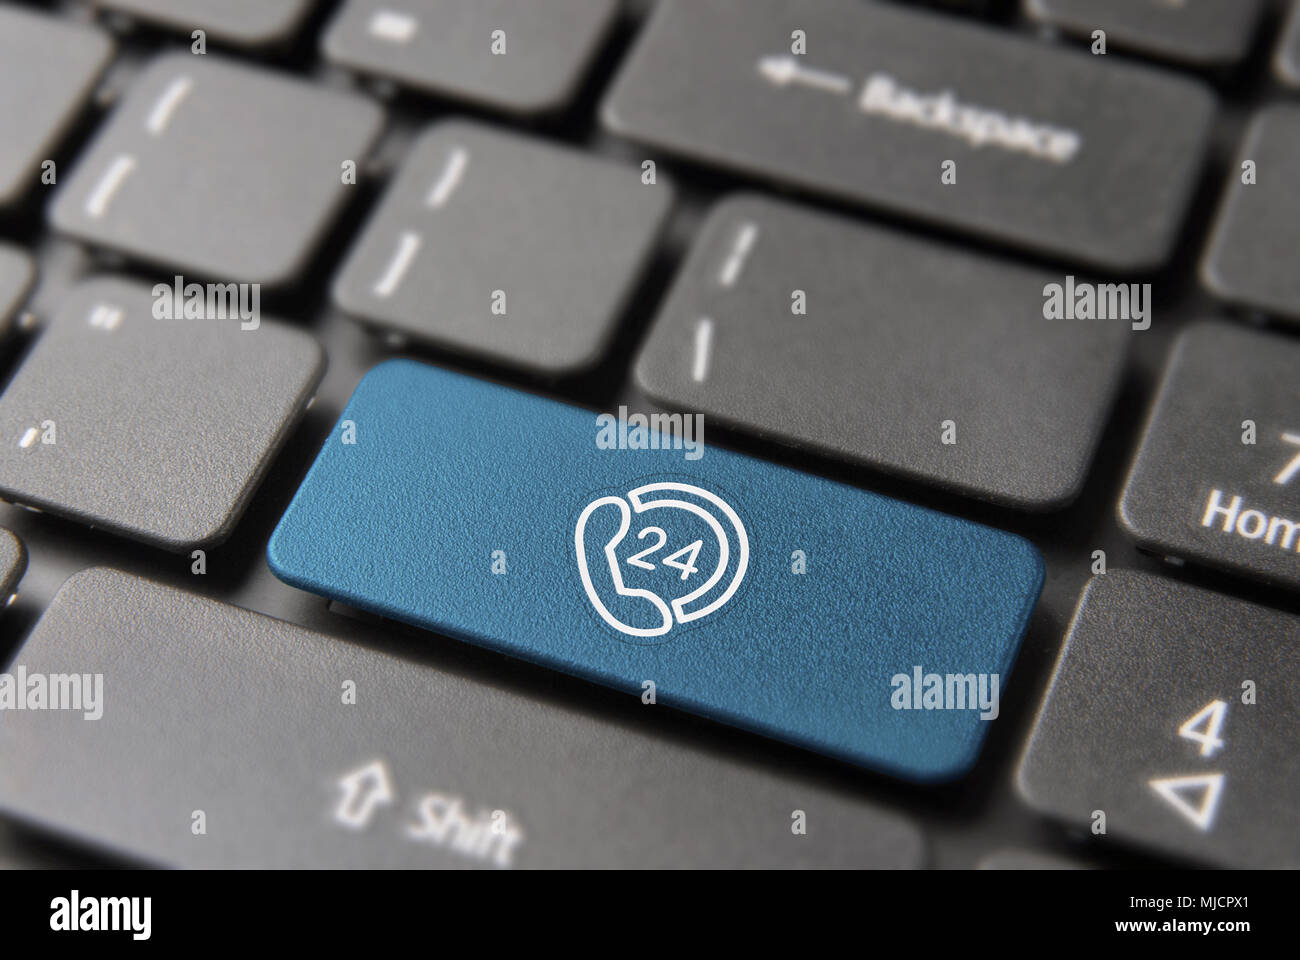 24-Stunden Service Taste auf Tastatur für 24/7 immer online Konzept. Laptop Schlüssel in blauer Farbe mit modernen Line Art Symbol. Stockfoto